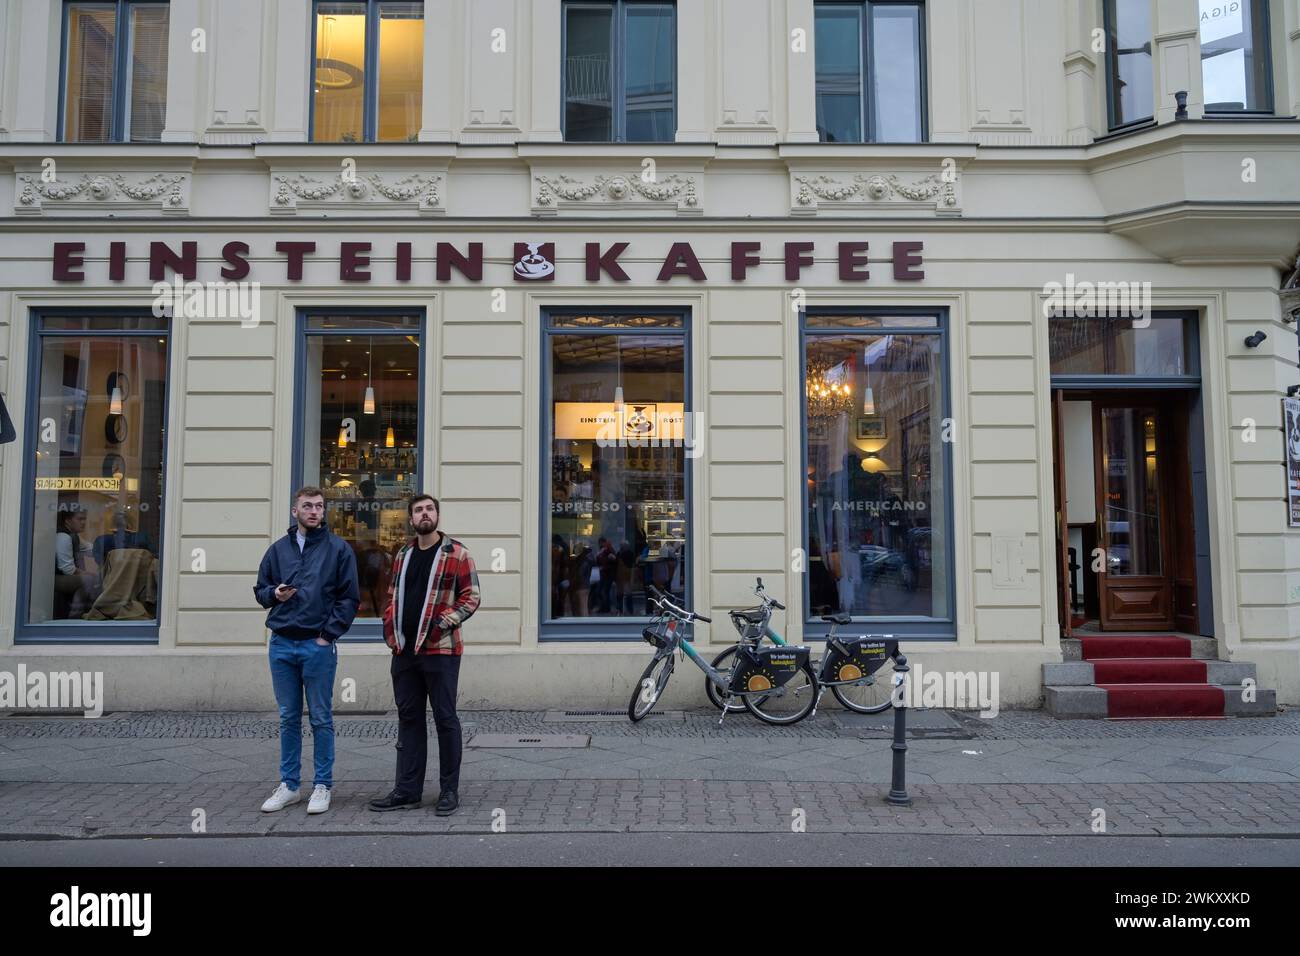 Einstein Kaffee, Café im Haus Apotheke zum Weißen Adler, Friedrichstraße, Checkpoint Charlie, Mitte, Berlin, Deutschland Stock Photo